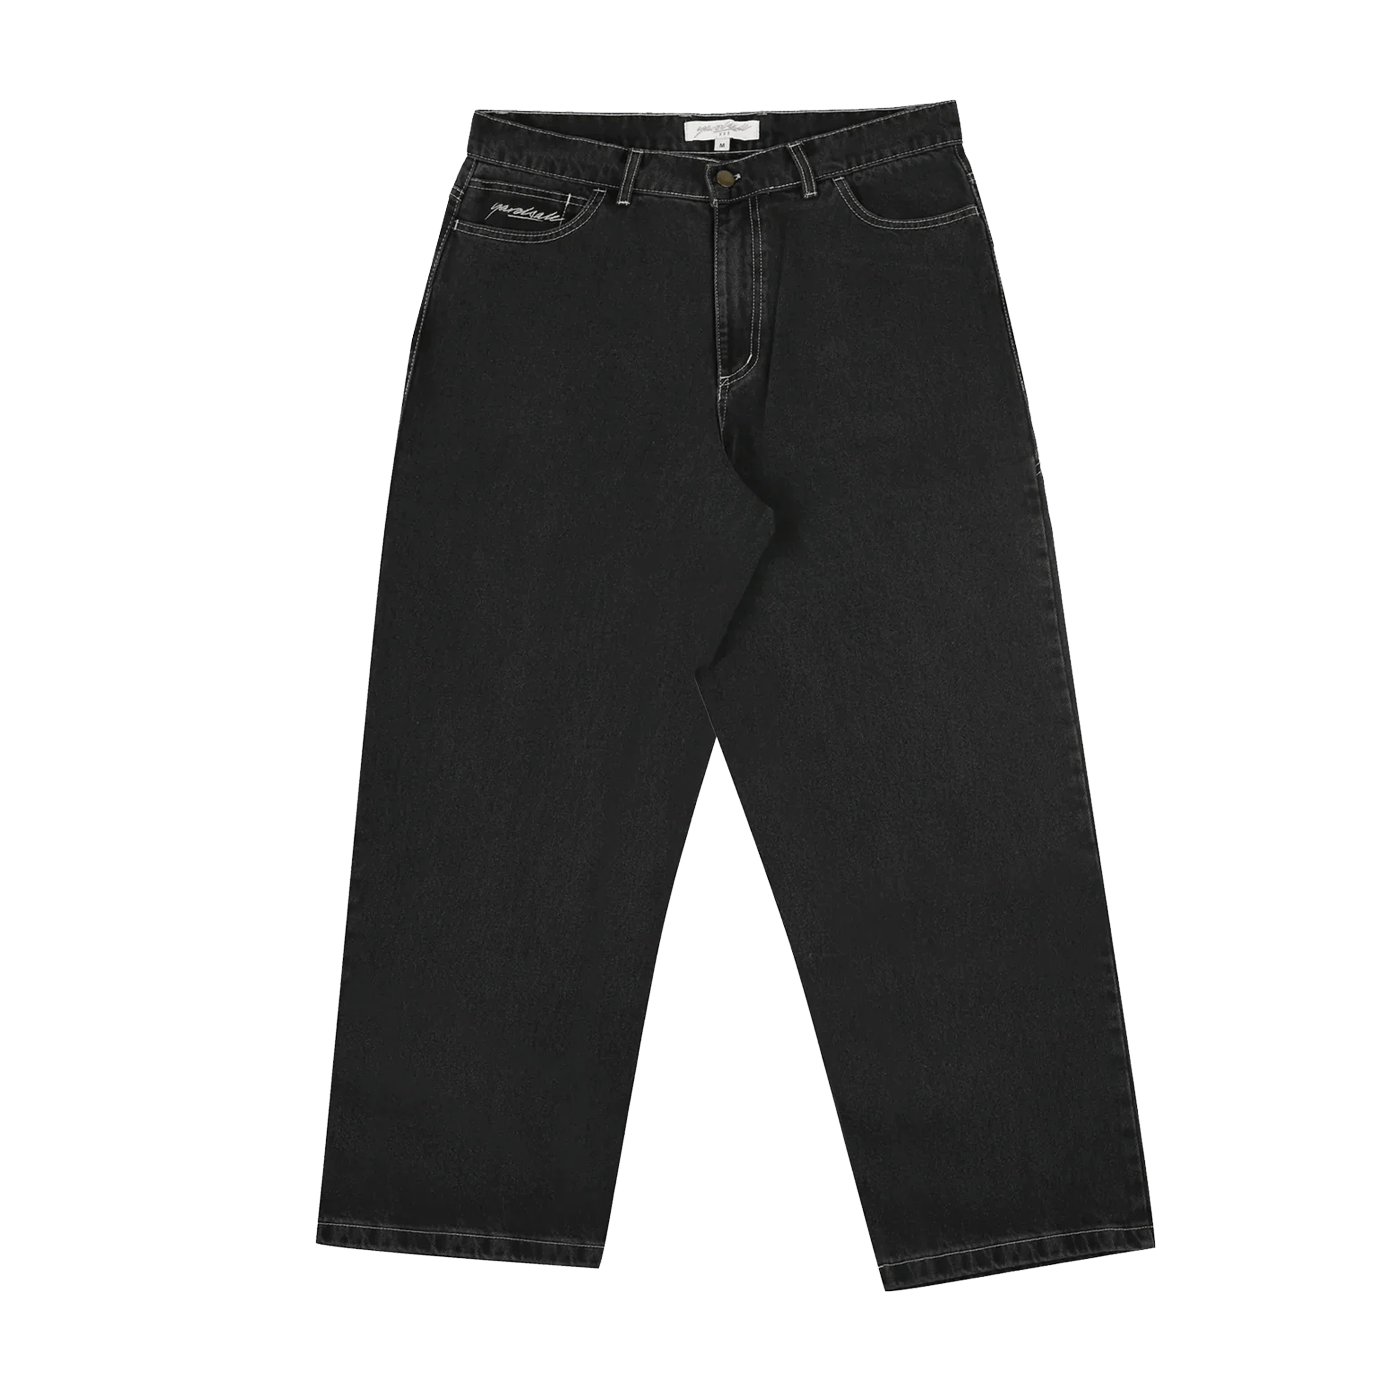 Yardsale Phantasy Jeans Black Denim